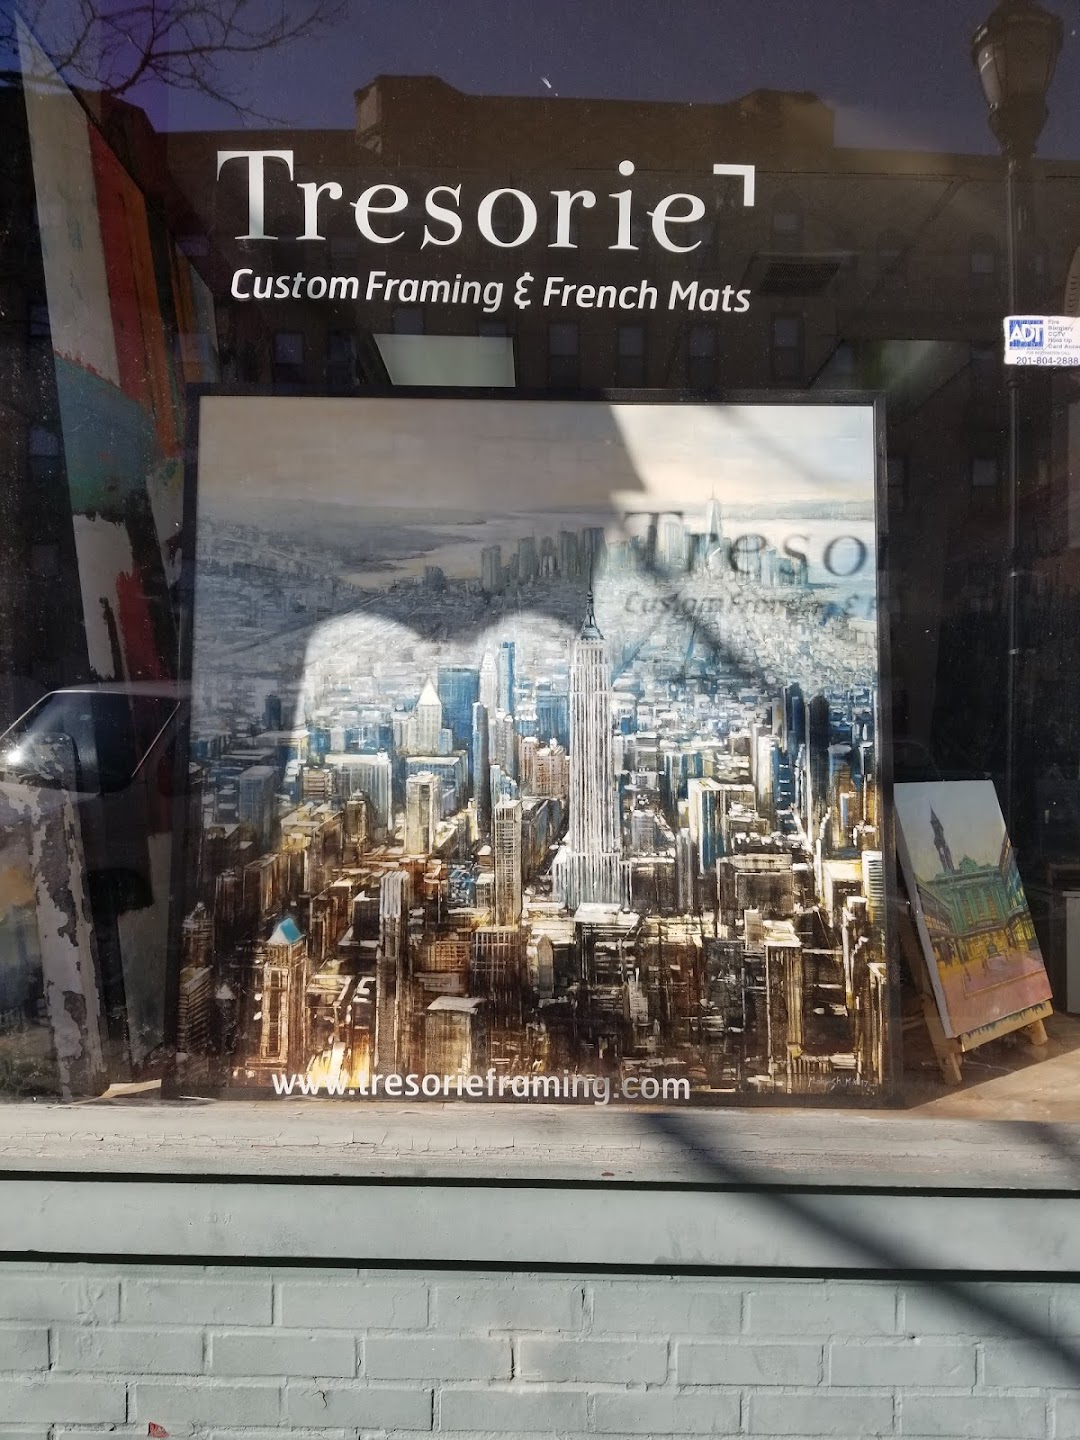 Tresorie - Custom Framing & French Mats